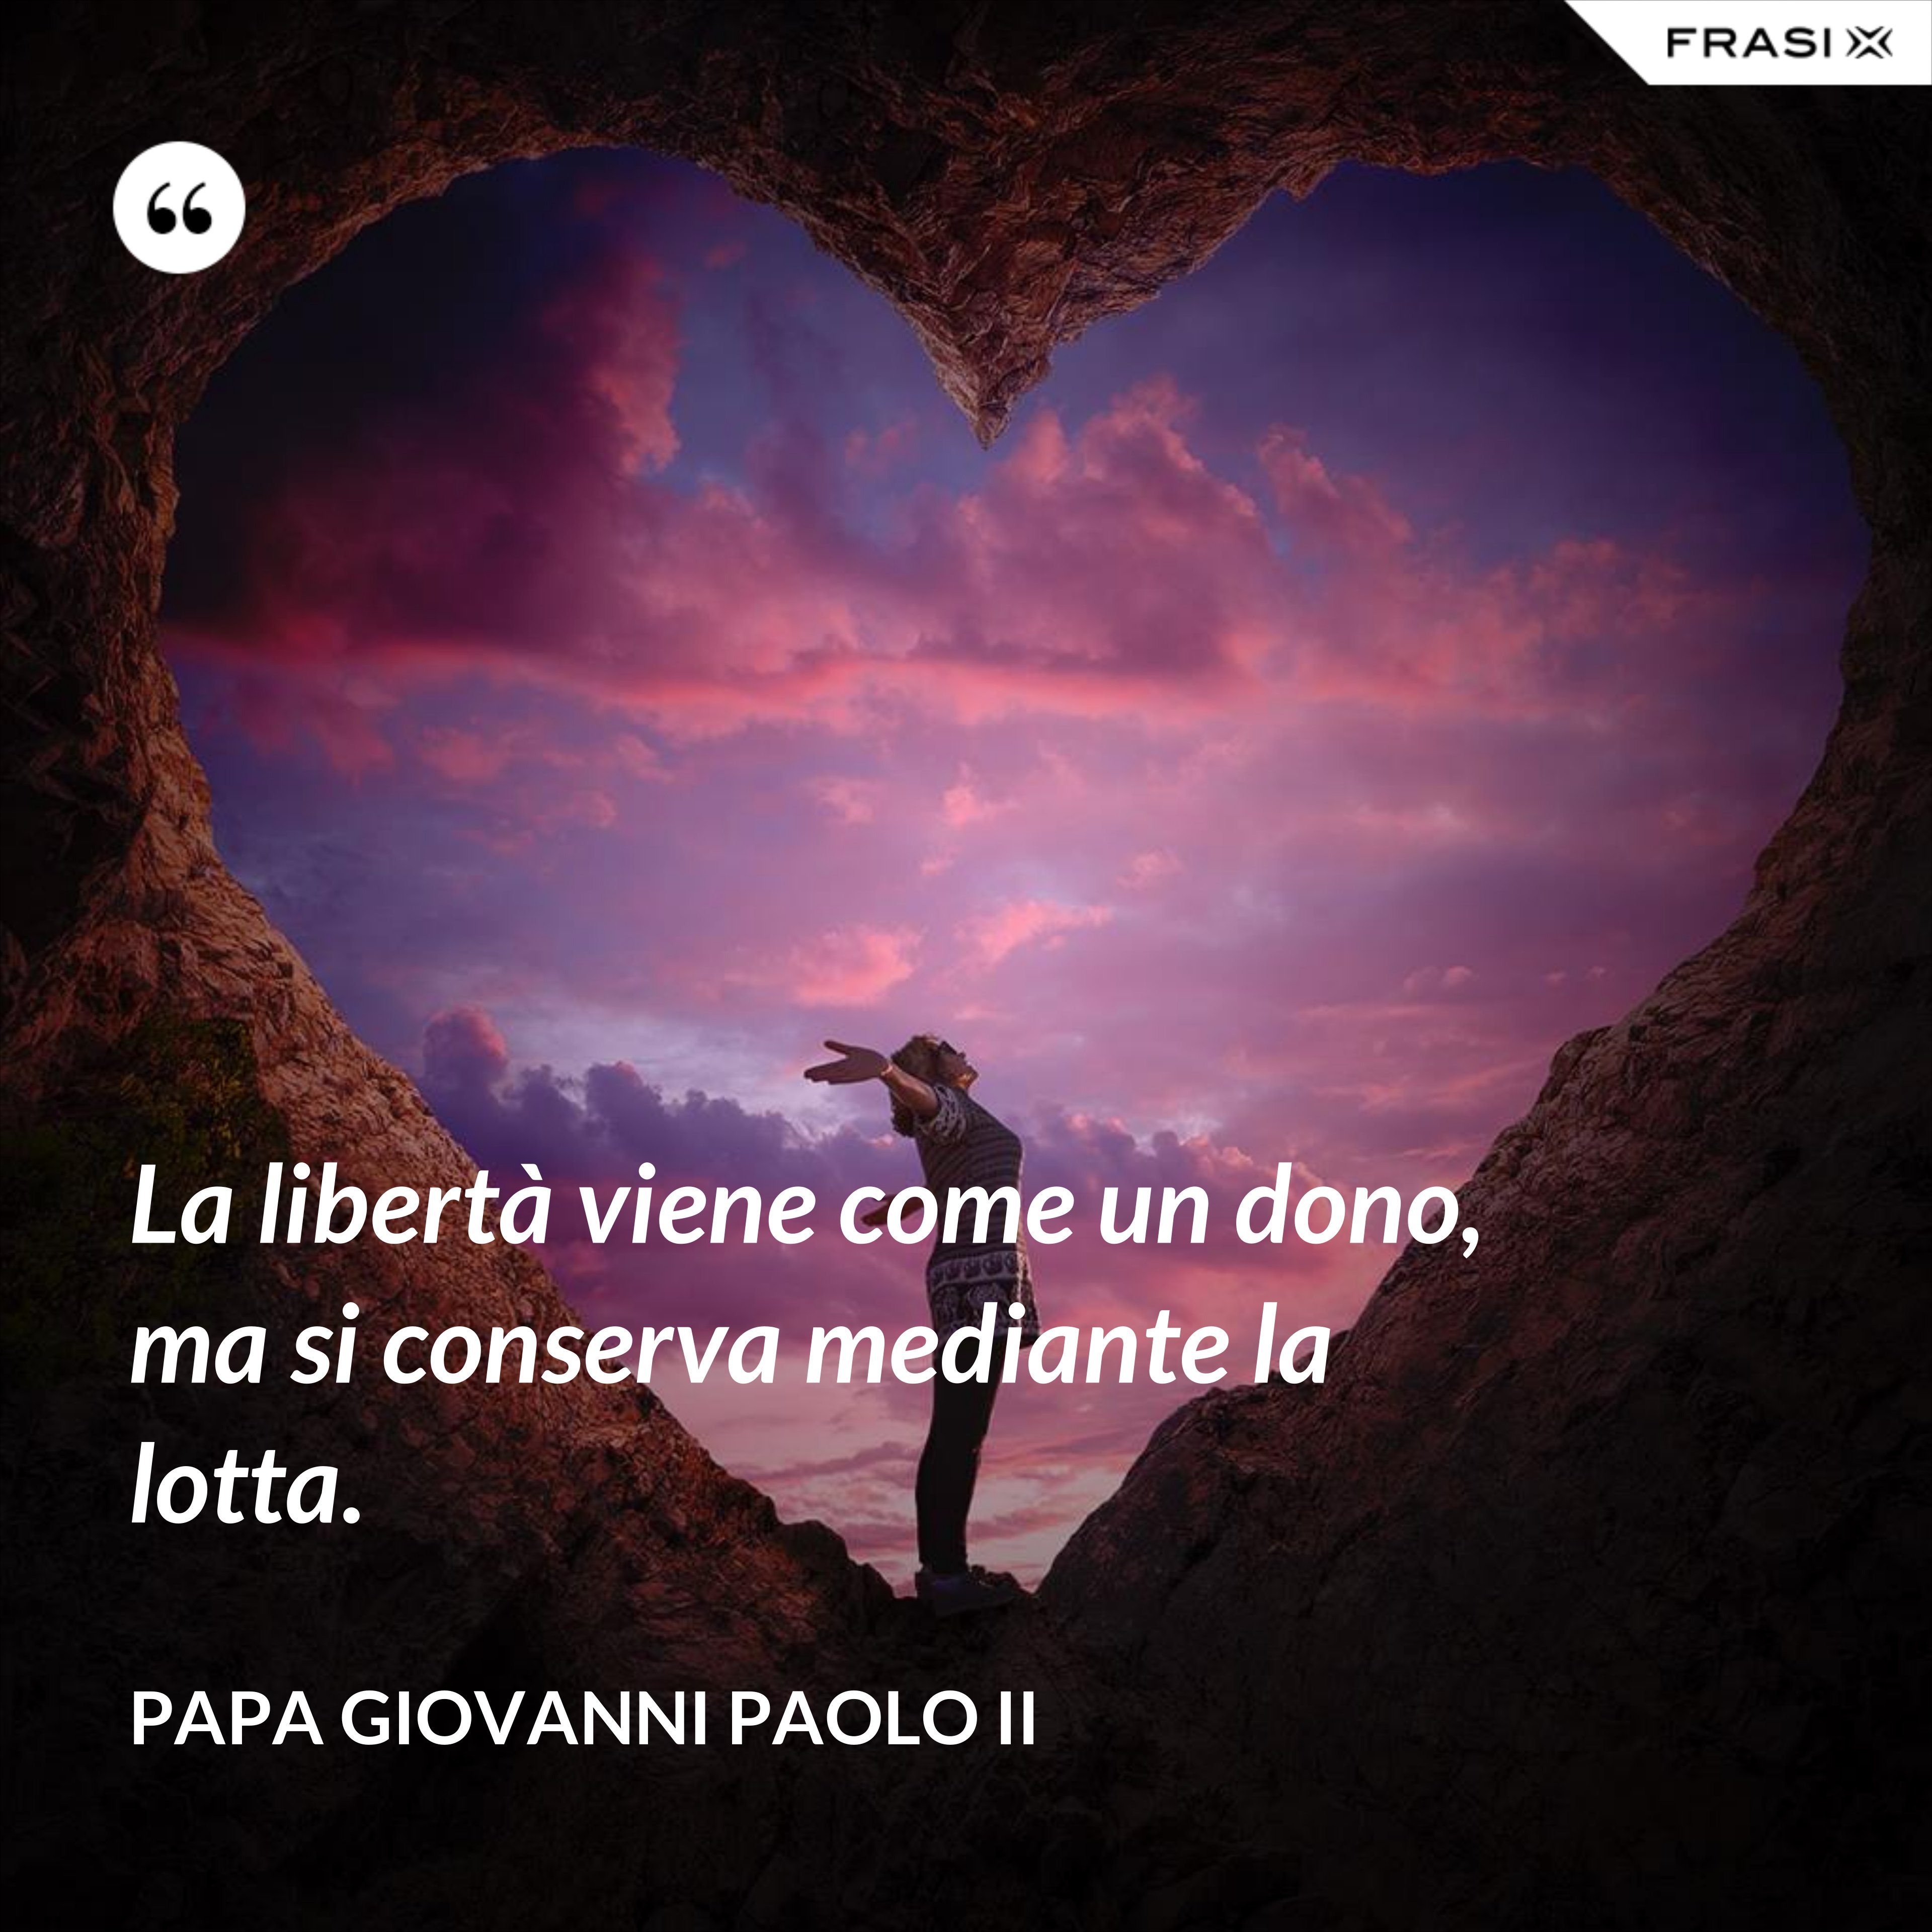 La libertà viene come un dono, ma si conserva mediante la lotta. - Papa Giovanni Paolo II